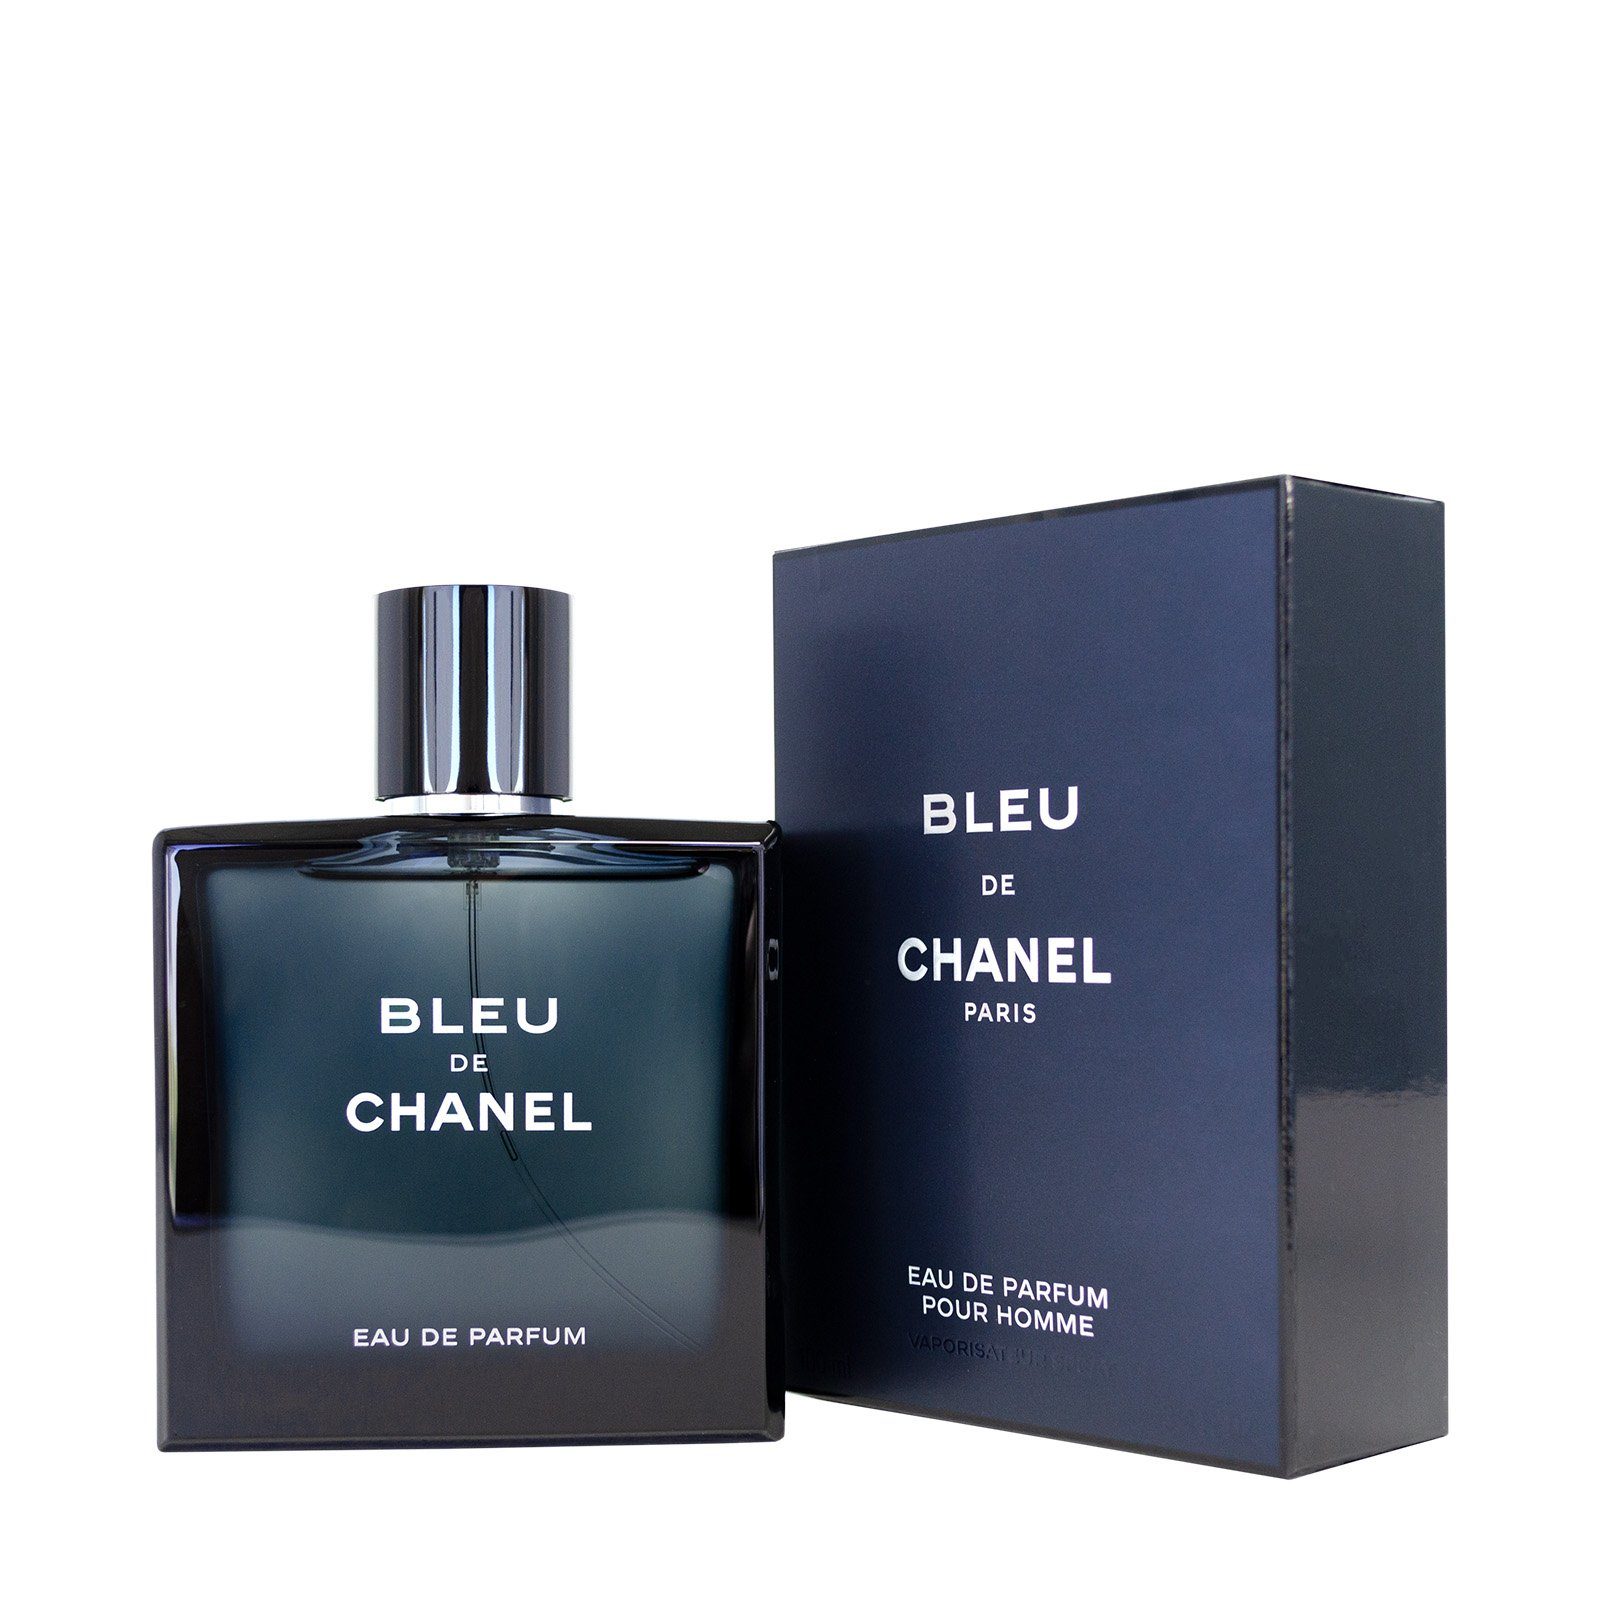 CHANEL Eau de Parfum Chanel Bleu Eau de Parfum